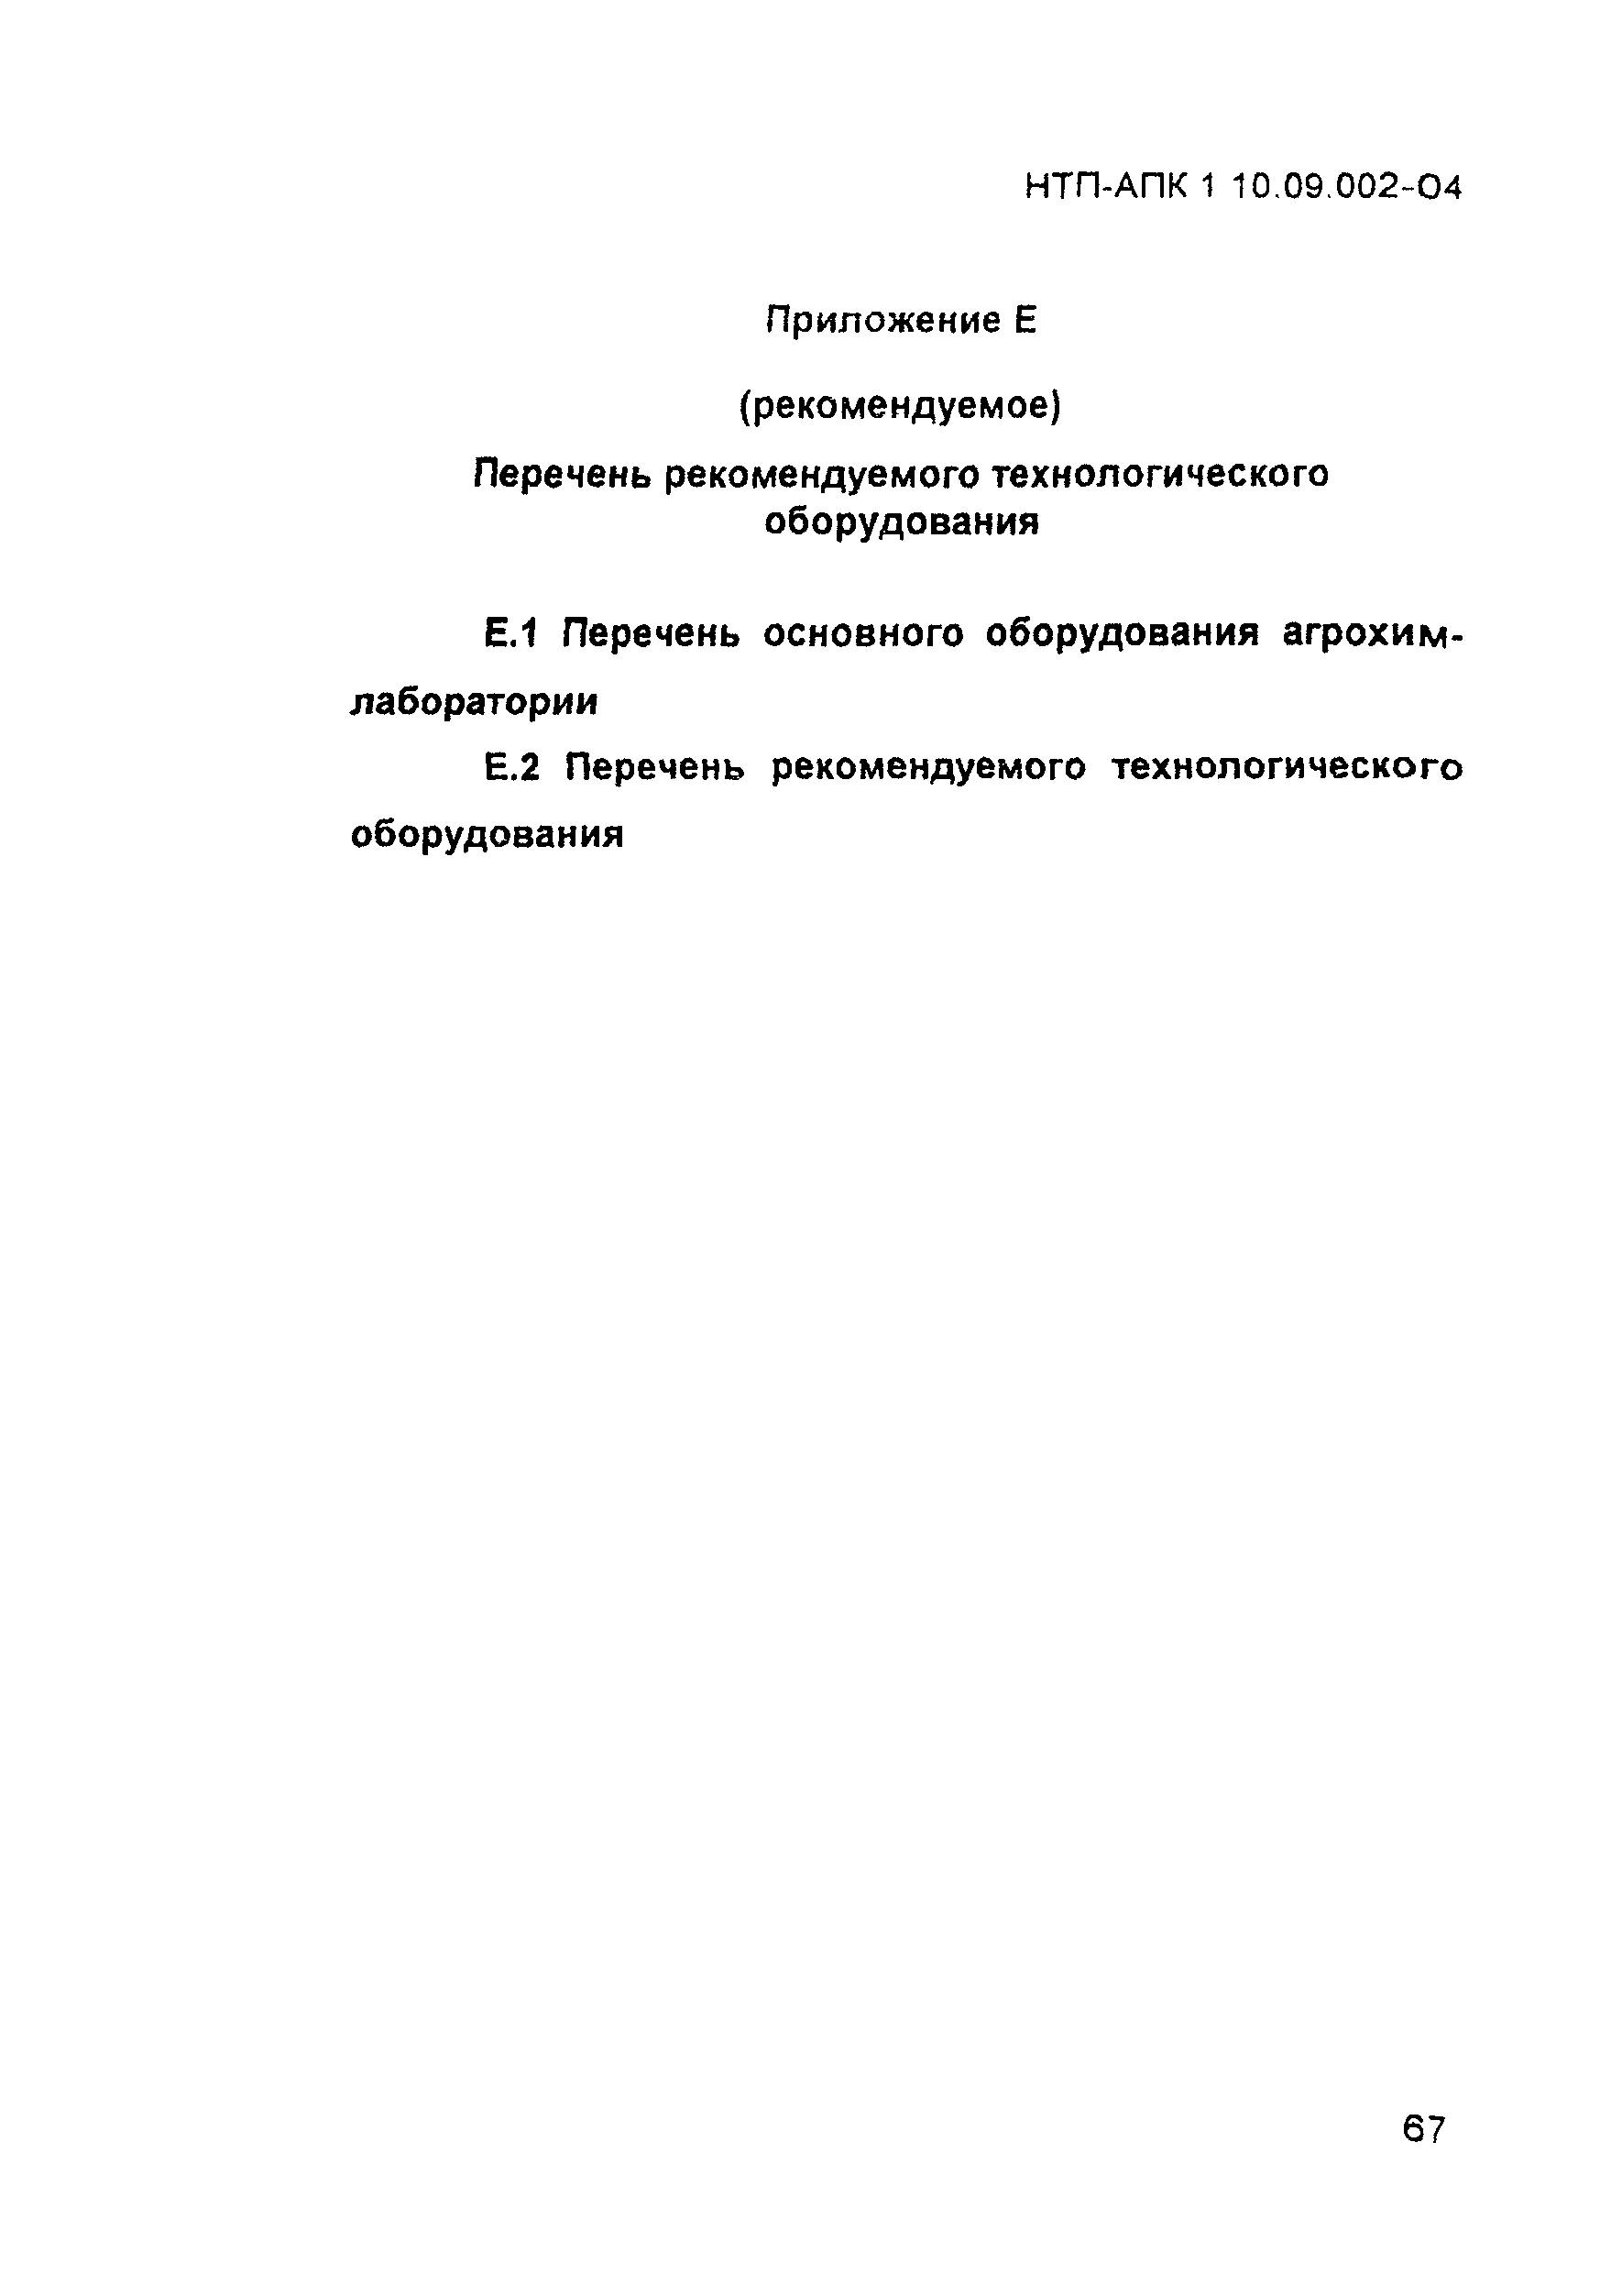 НТП-АПК 1.10.09.002-04